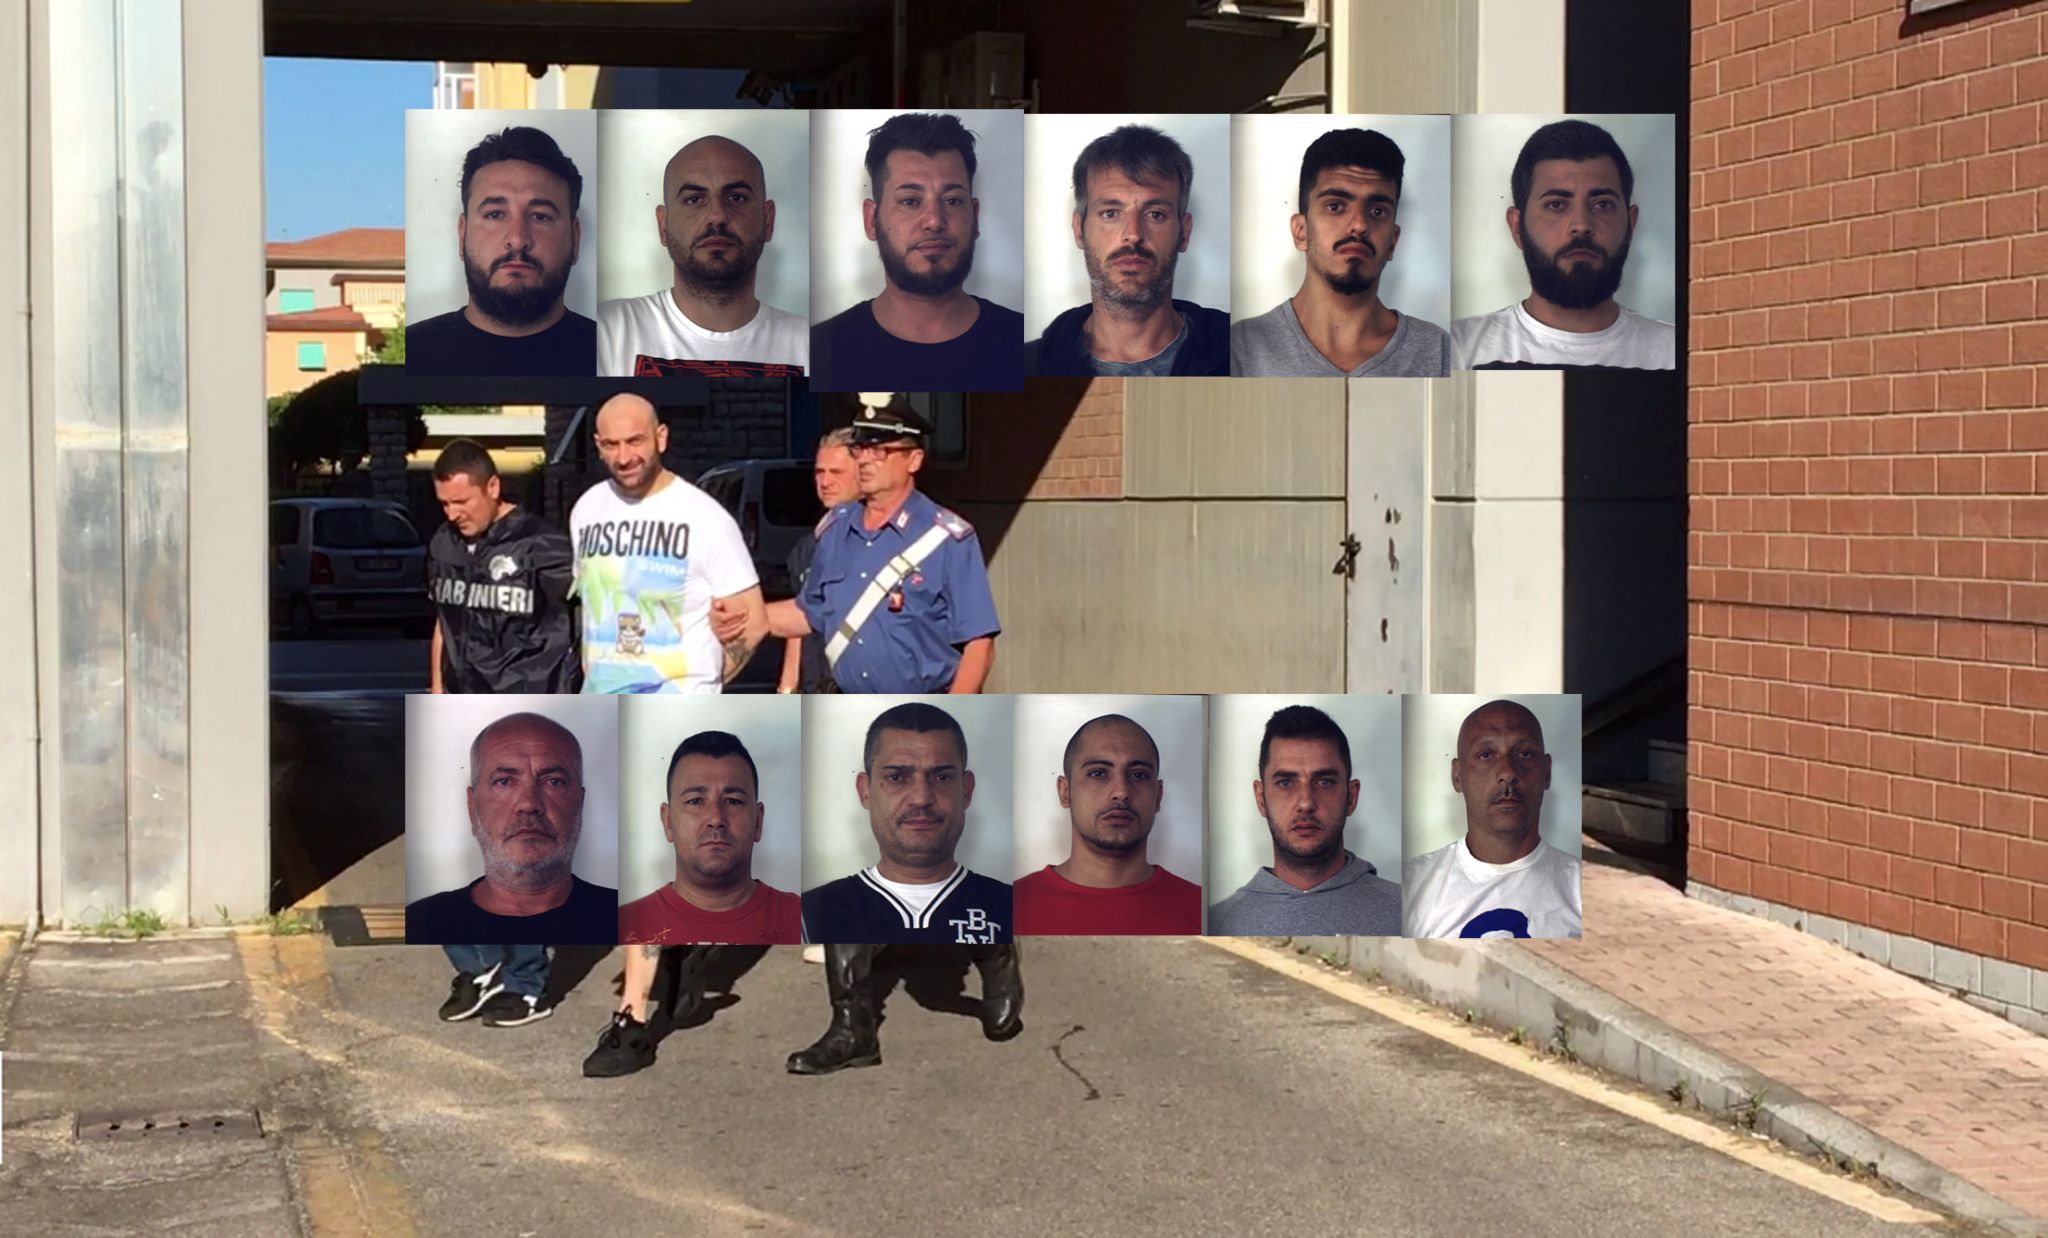 Importavano fiumi di ‘erba’ dalla Spagna: chiesti 215 anni di carcere per il gruppo di Genny a’ carogna